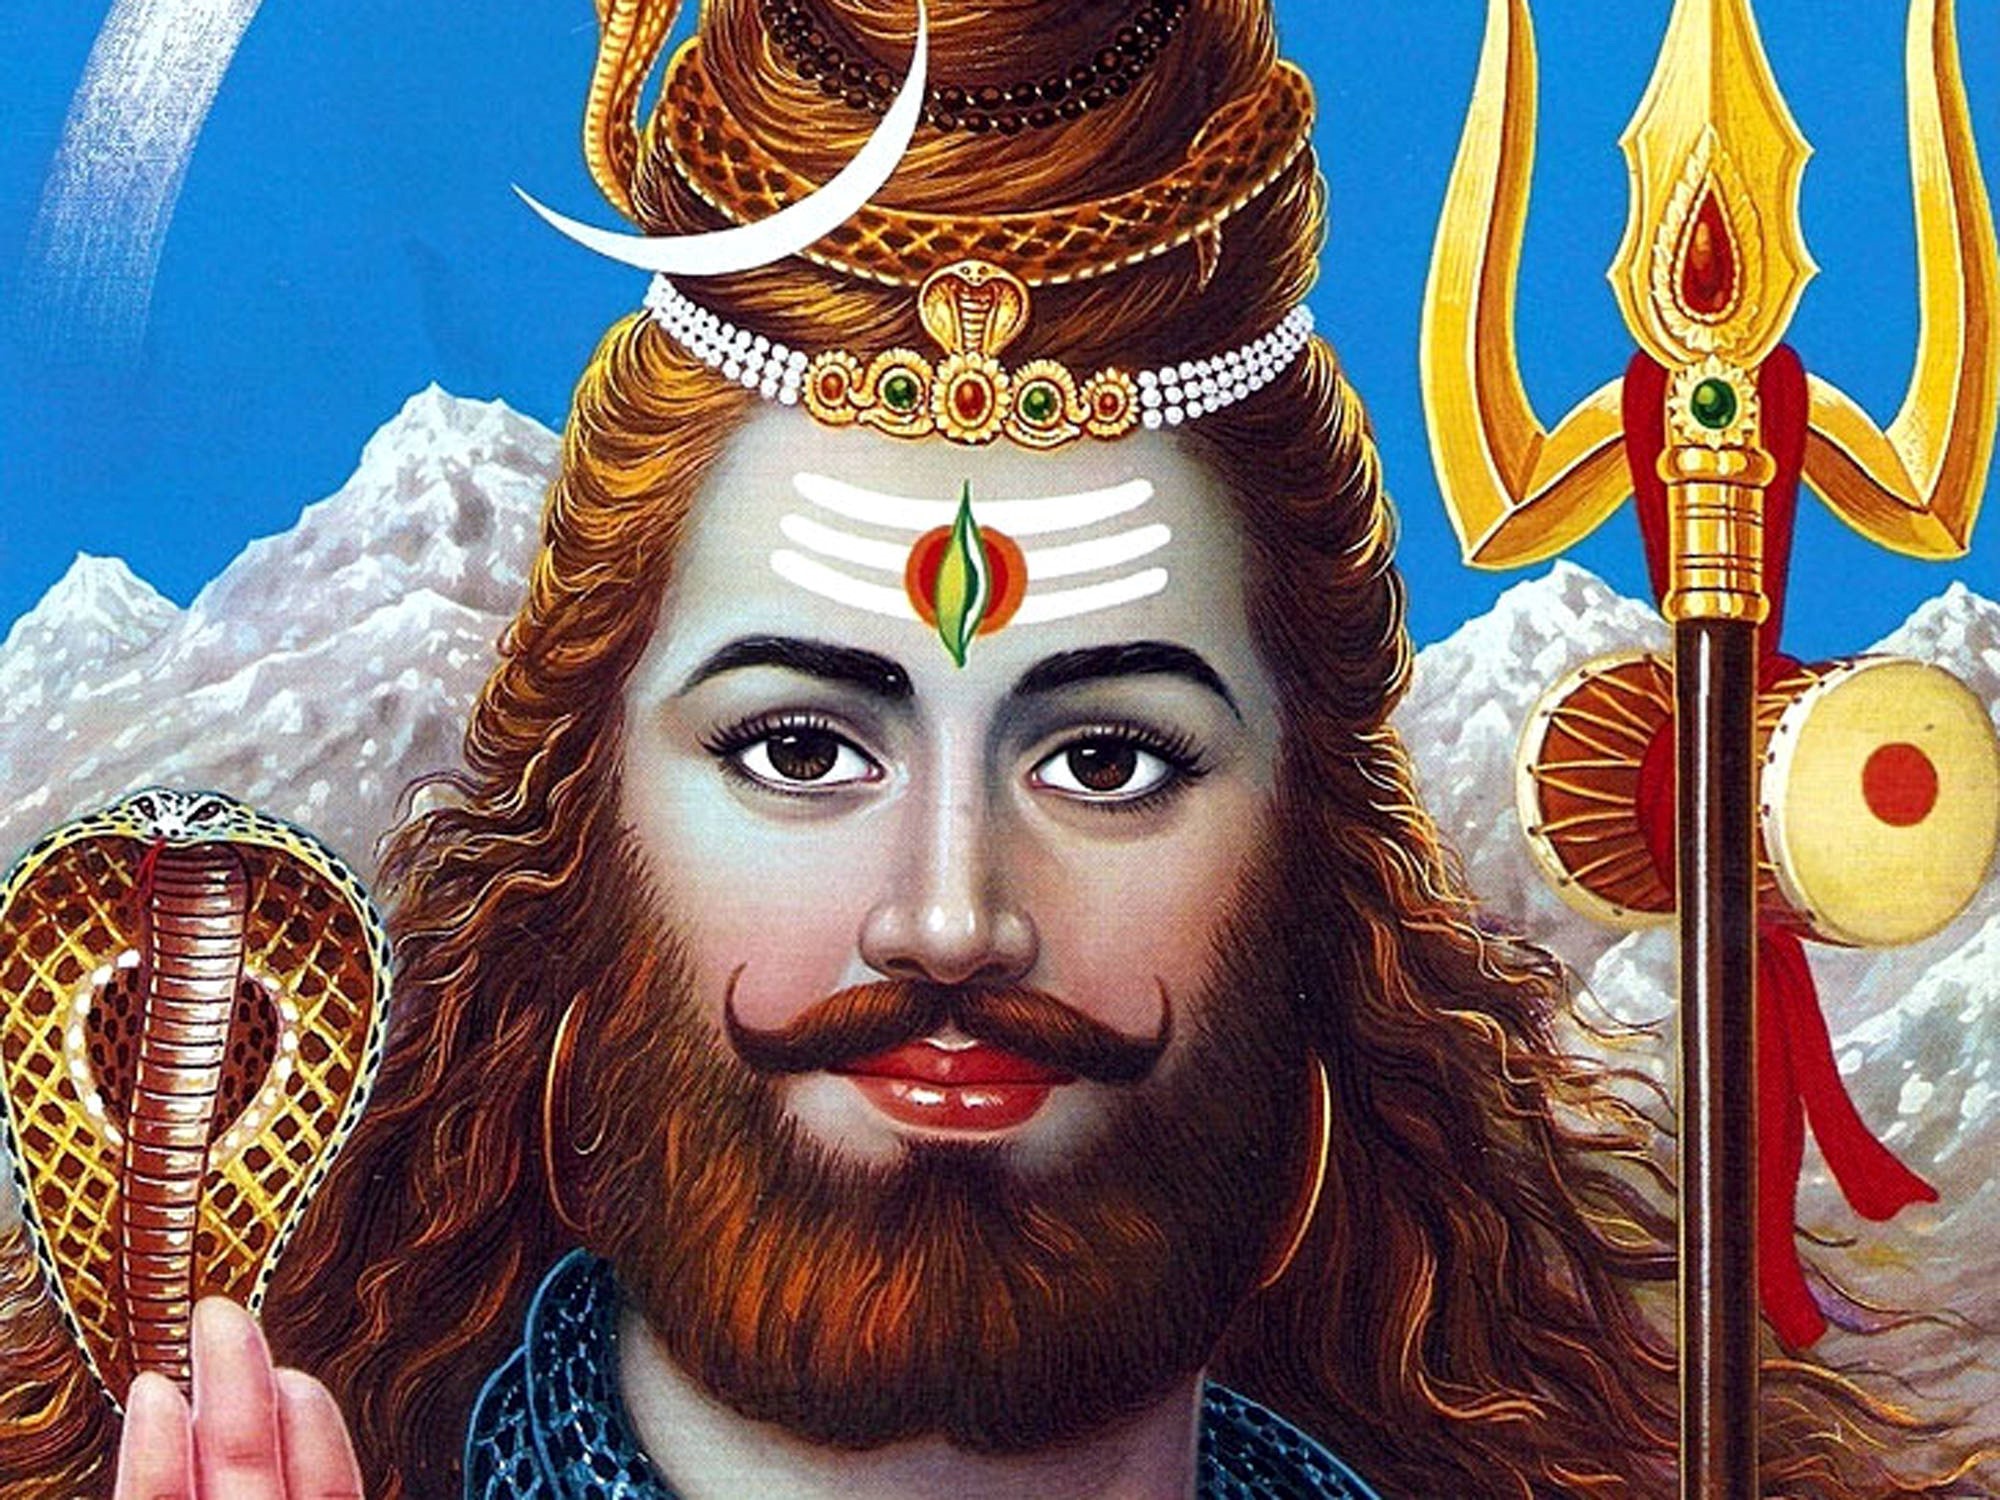 Lord Shiva With Beard - HD Wallpaper 